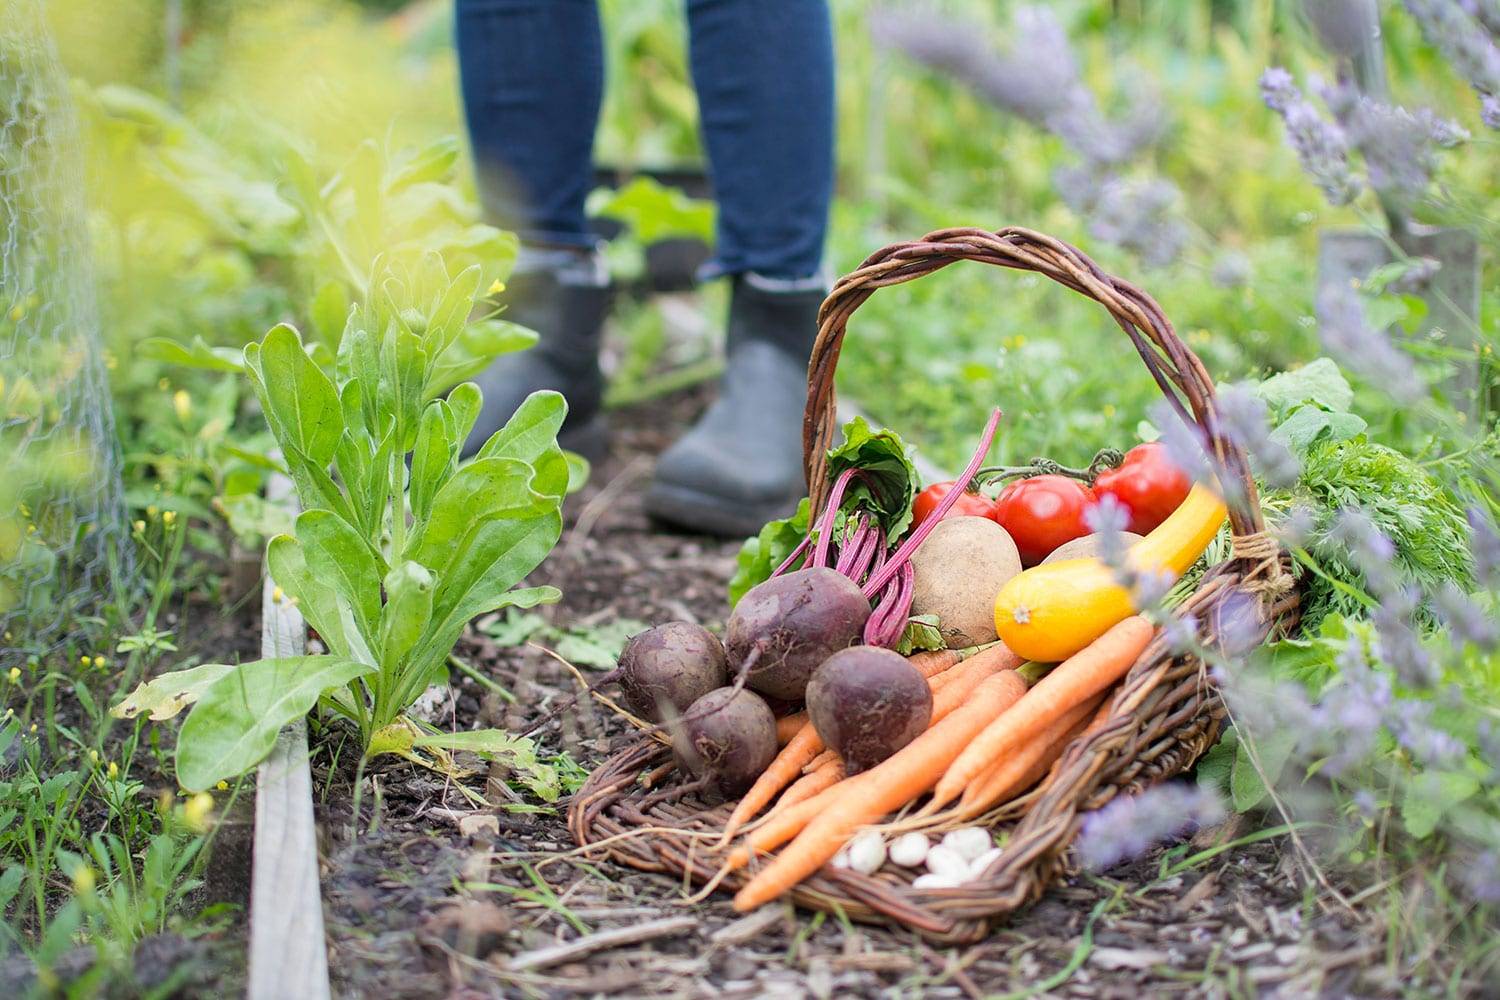 Осенние работы в саду и огороде — что важно сделать